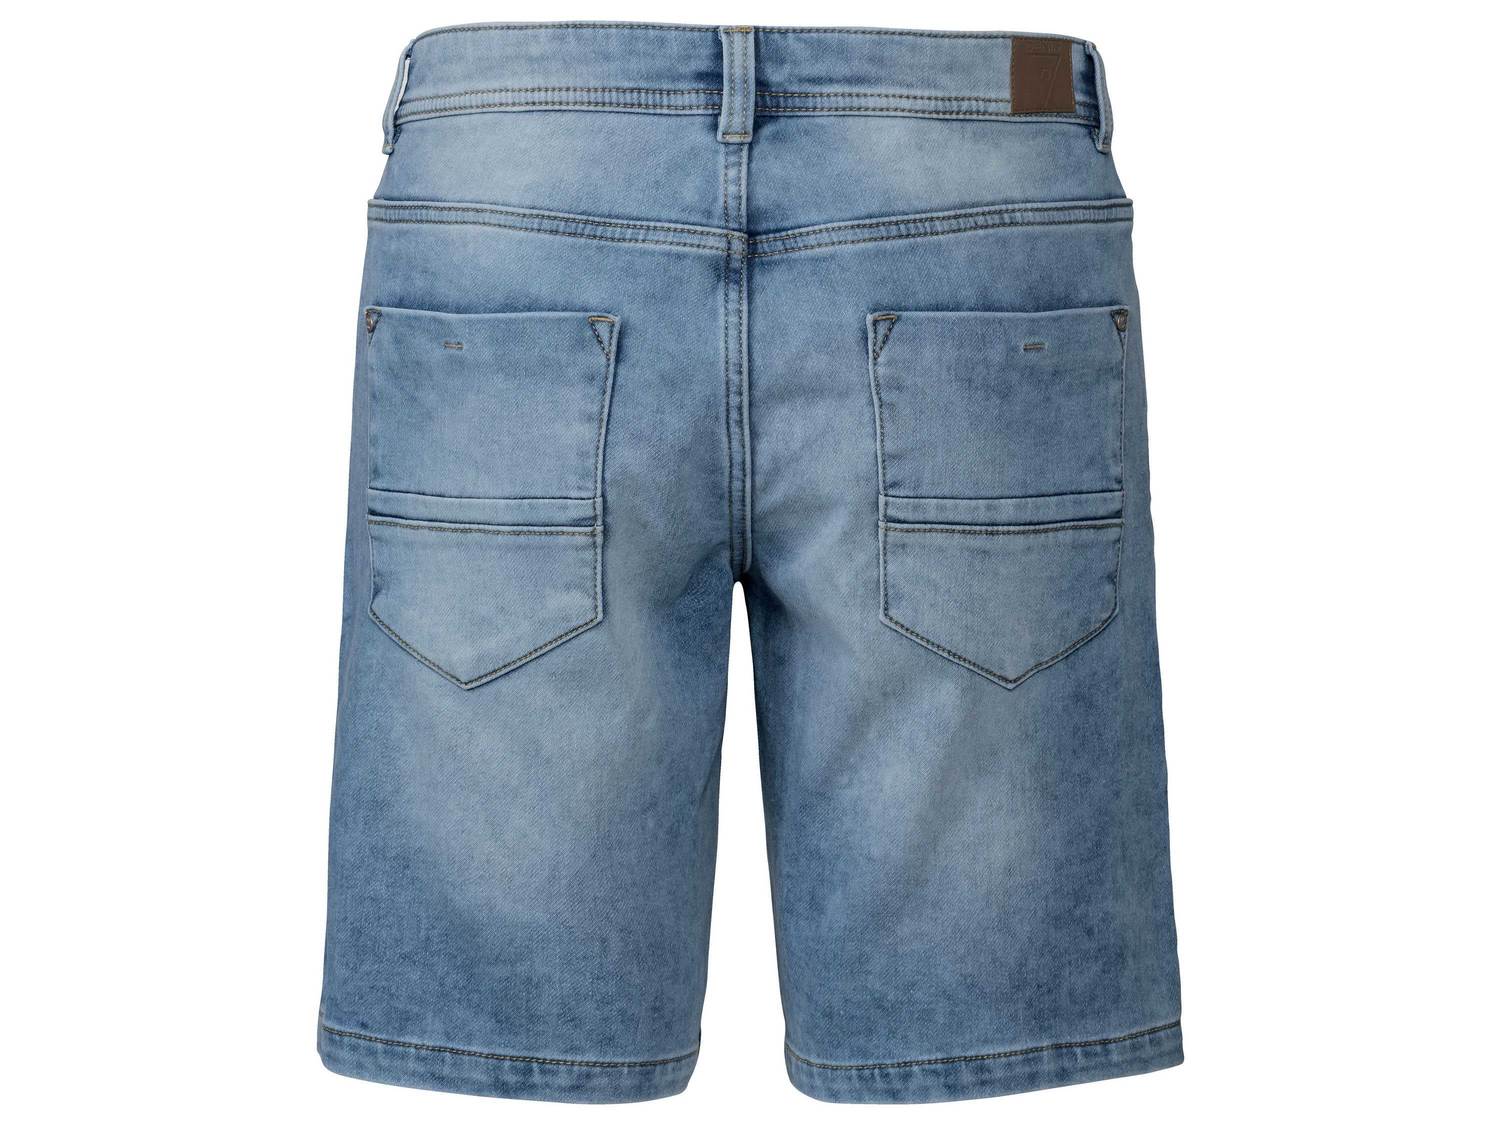 Bermudy jeansowe Livergy, cena 34,99 PLN 
- rozmiary: 50-56
- Oeko-Tex Standard ...